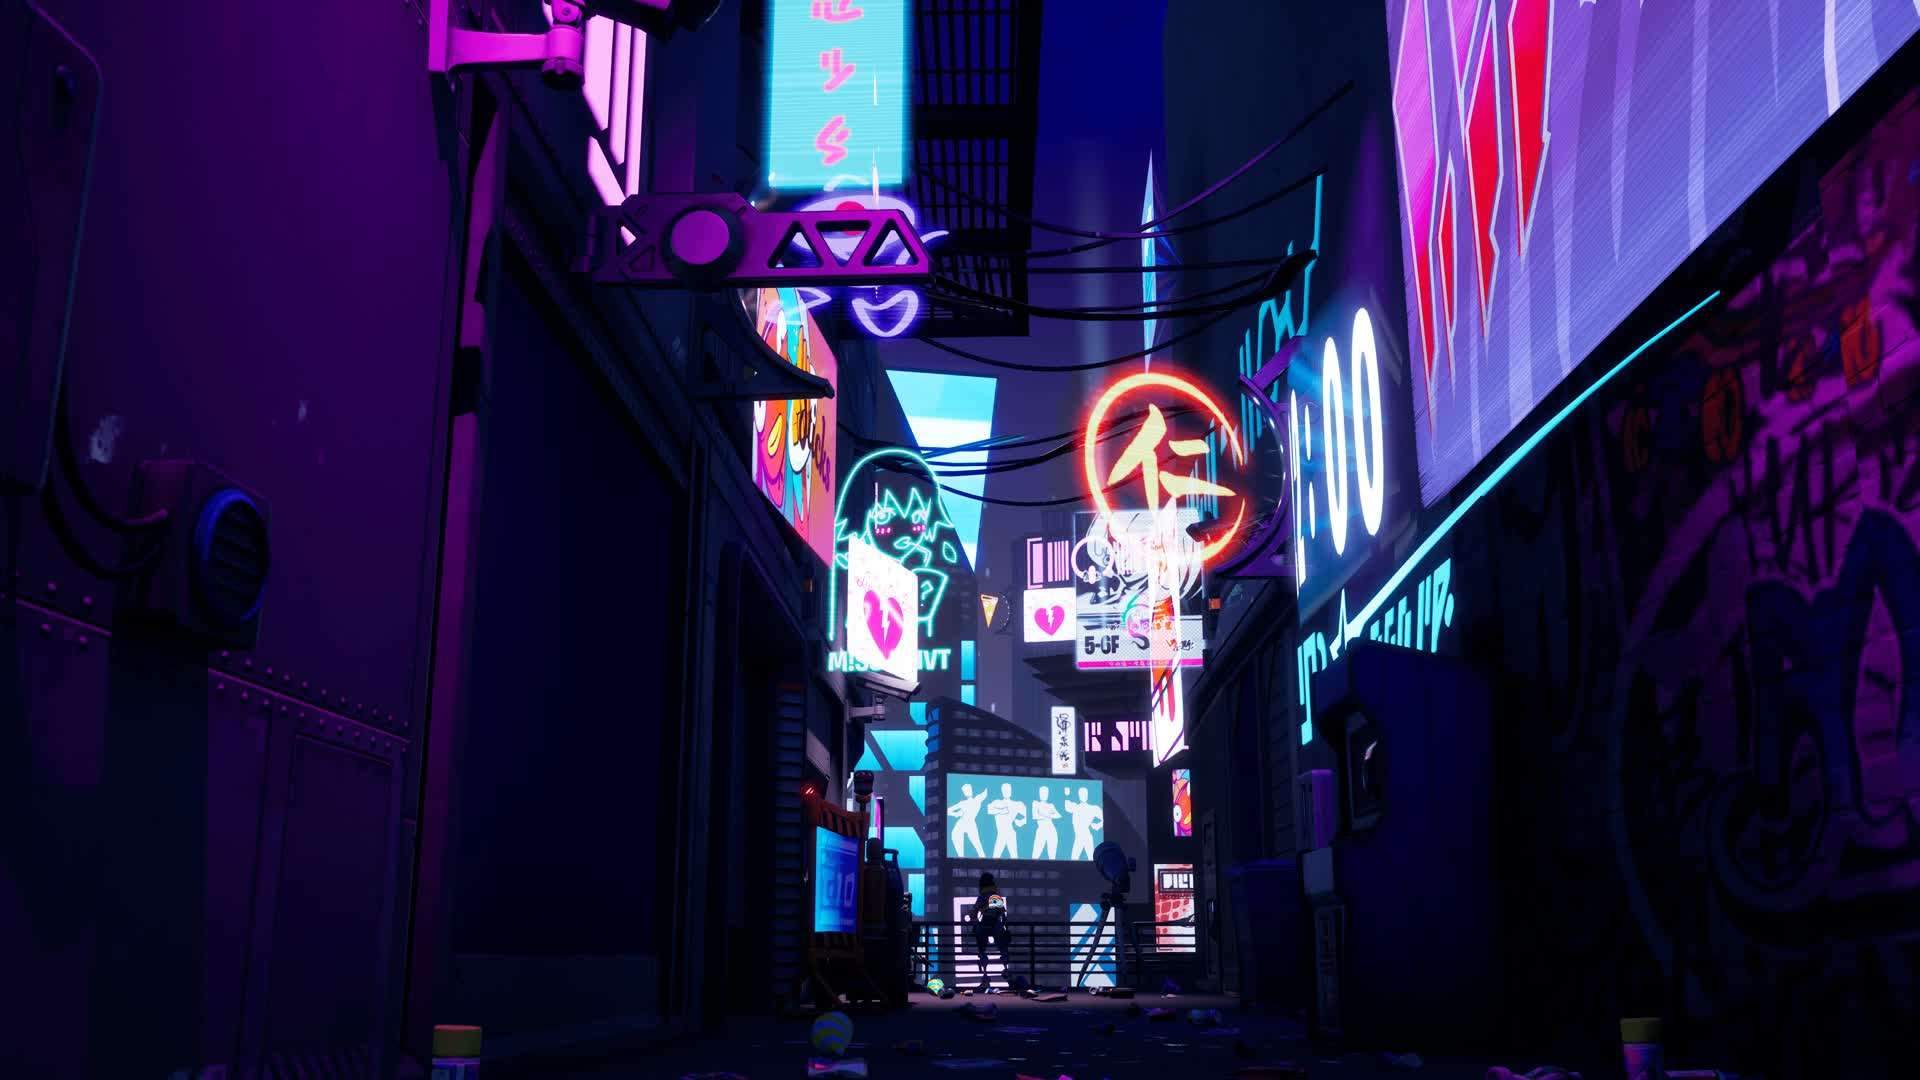 Cyberpunk alleyway